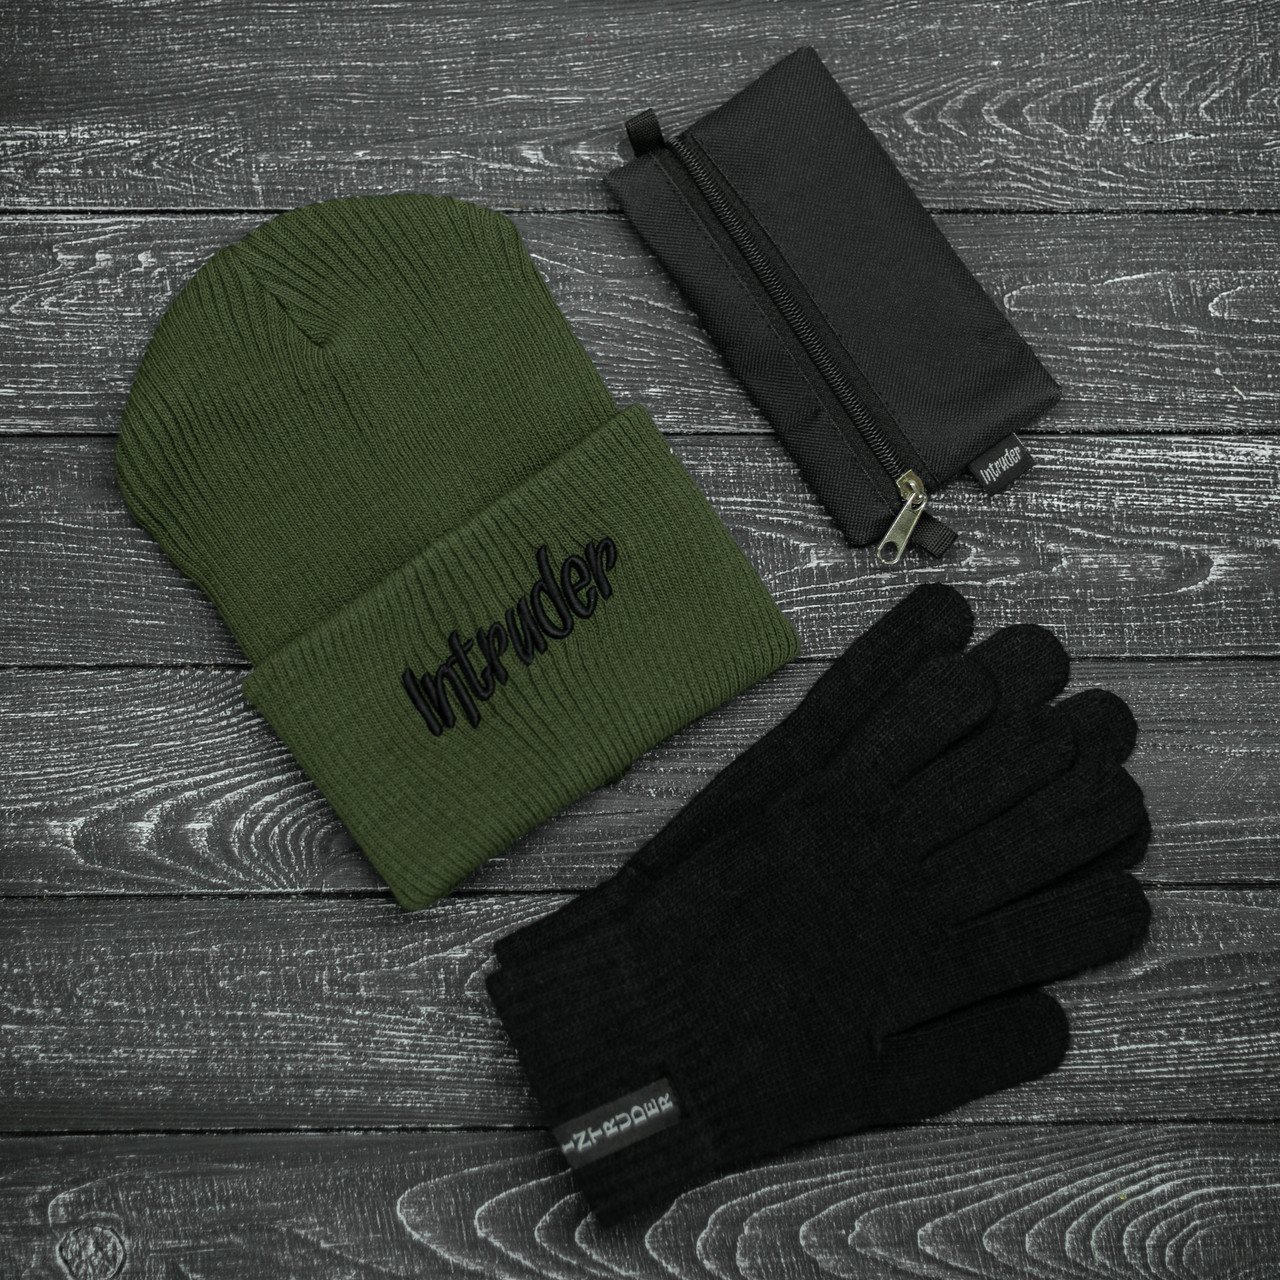 Шапка Intruder зимняя big logo хаки и перчатки черные, зимний комплект